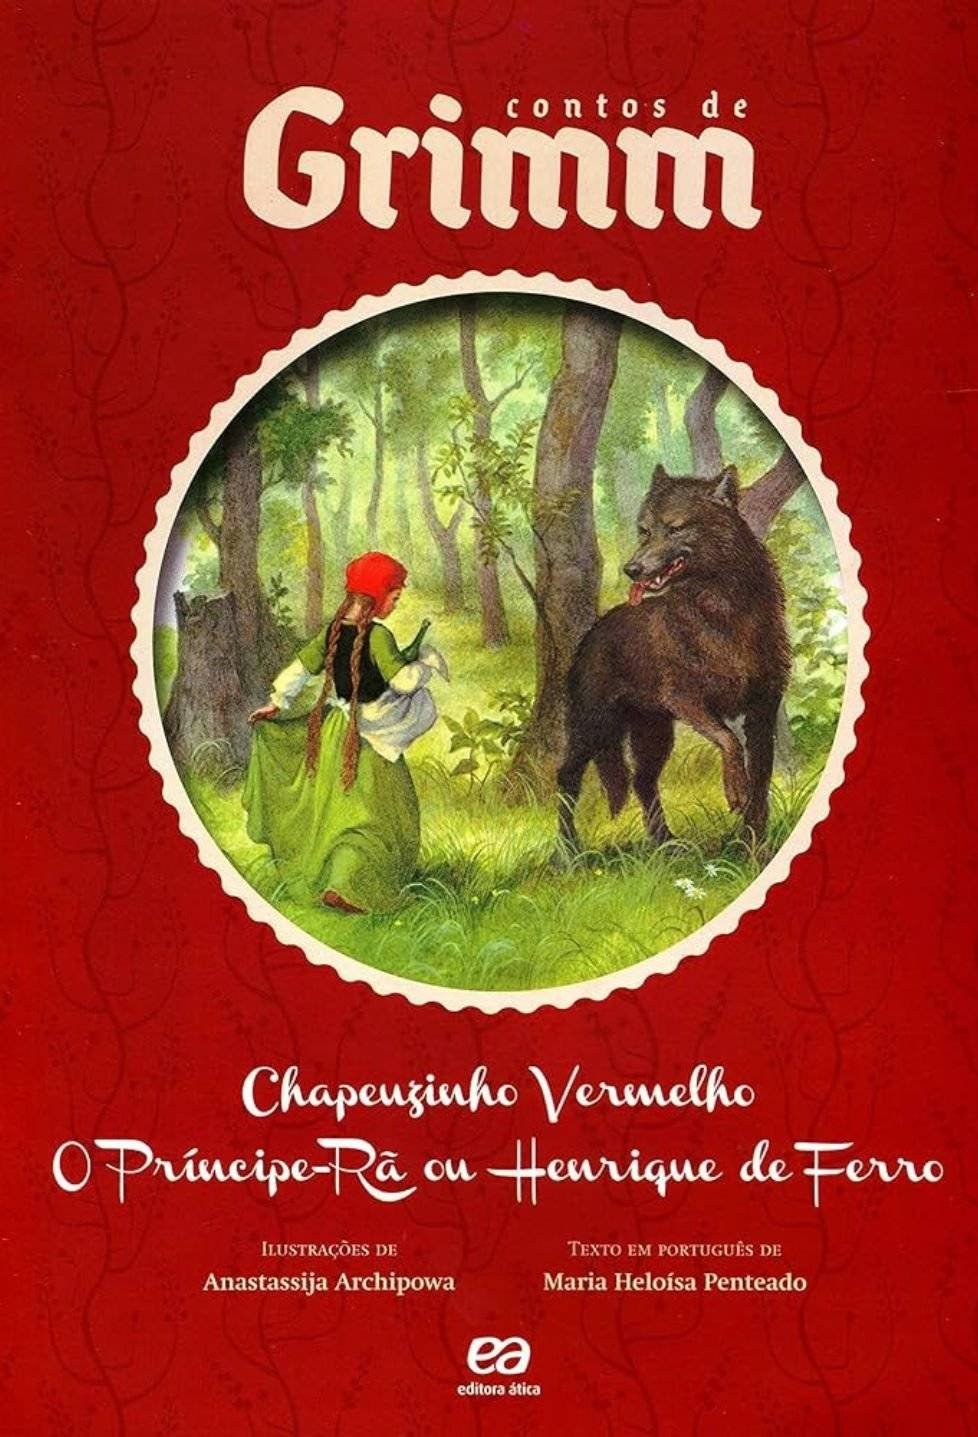 Chapeuzinho Vermelho - Little Red Riding Hood - Irmãos Grimm PDF, ePub, Mobi